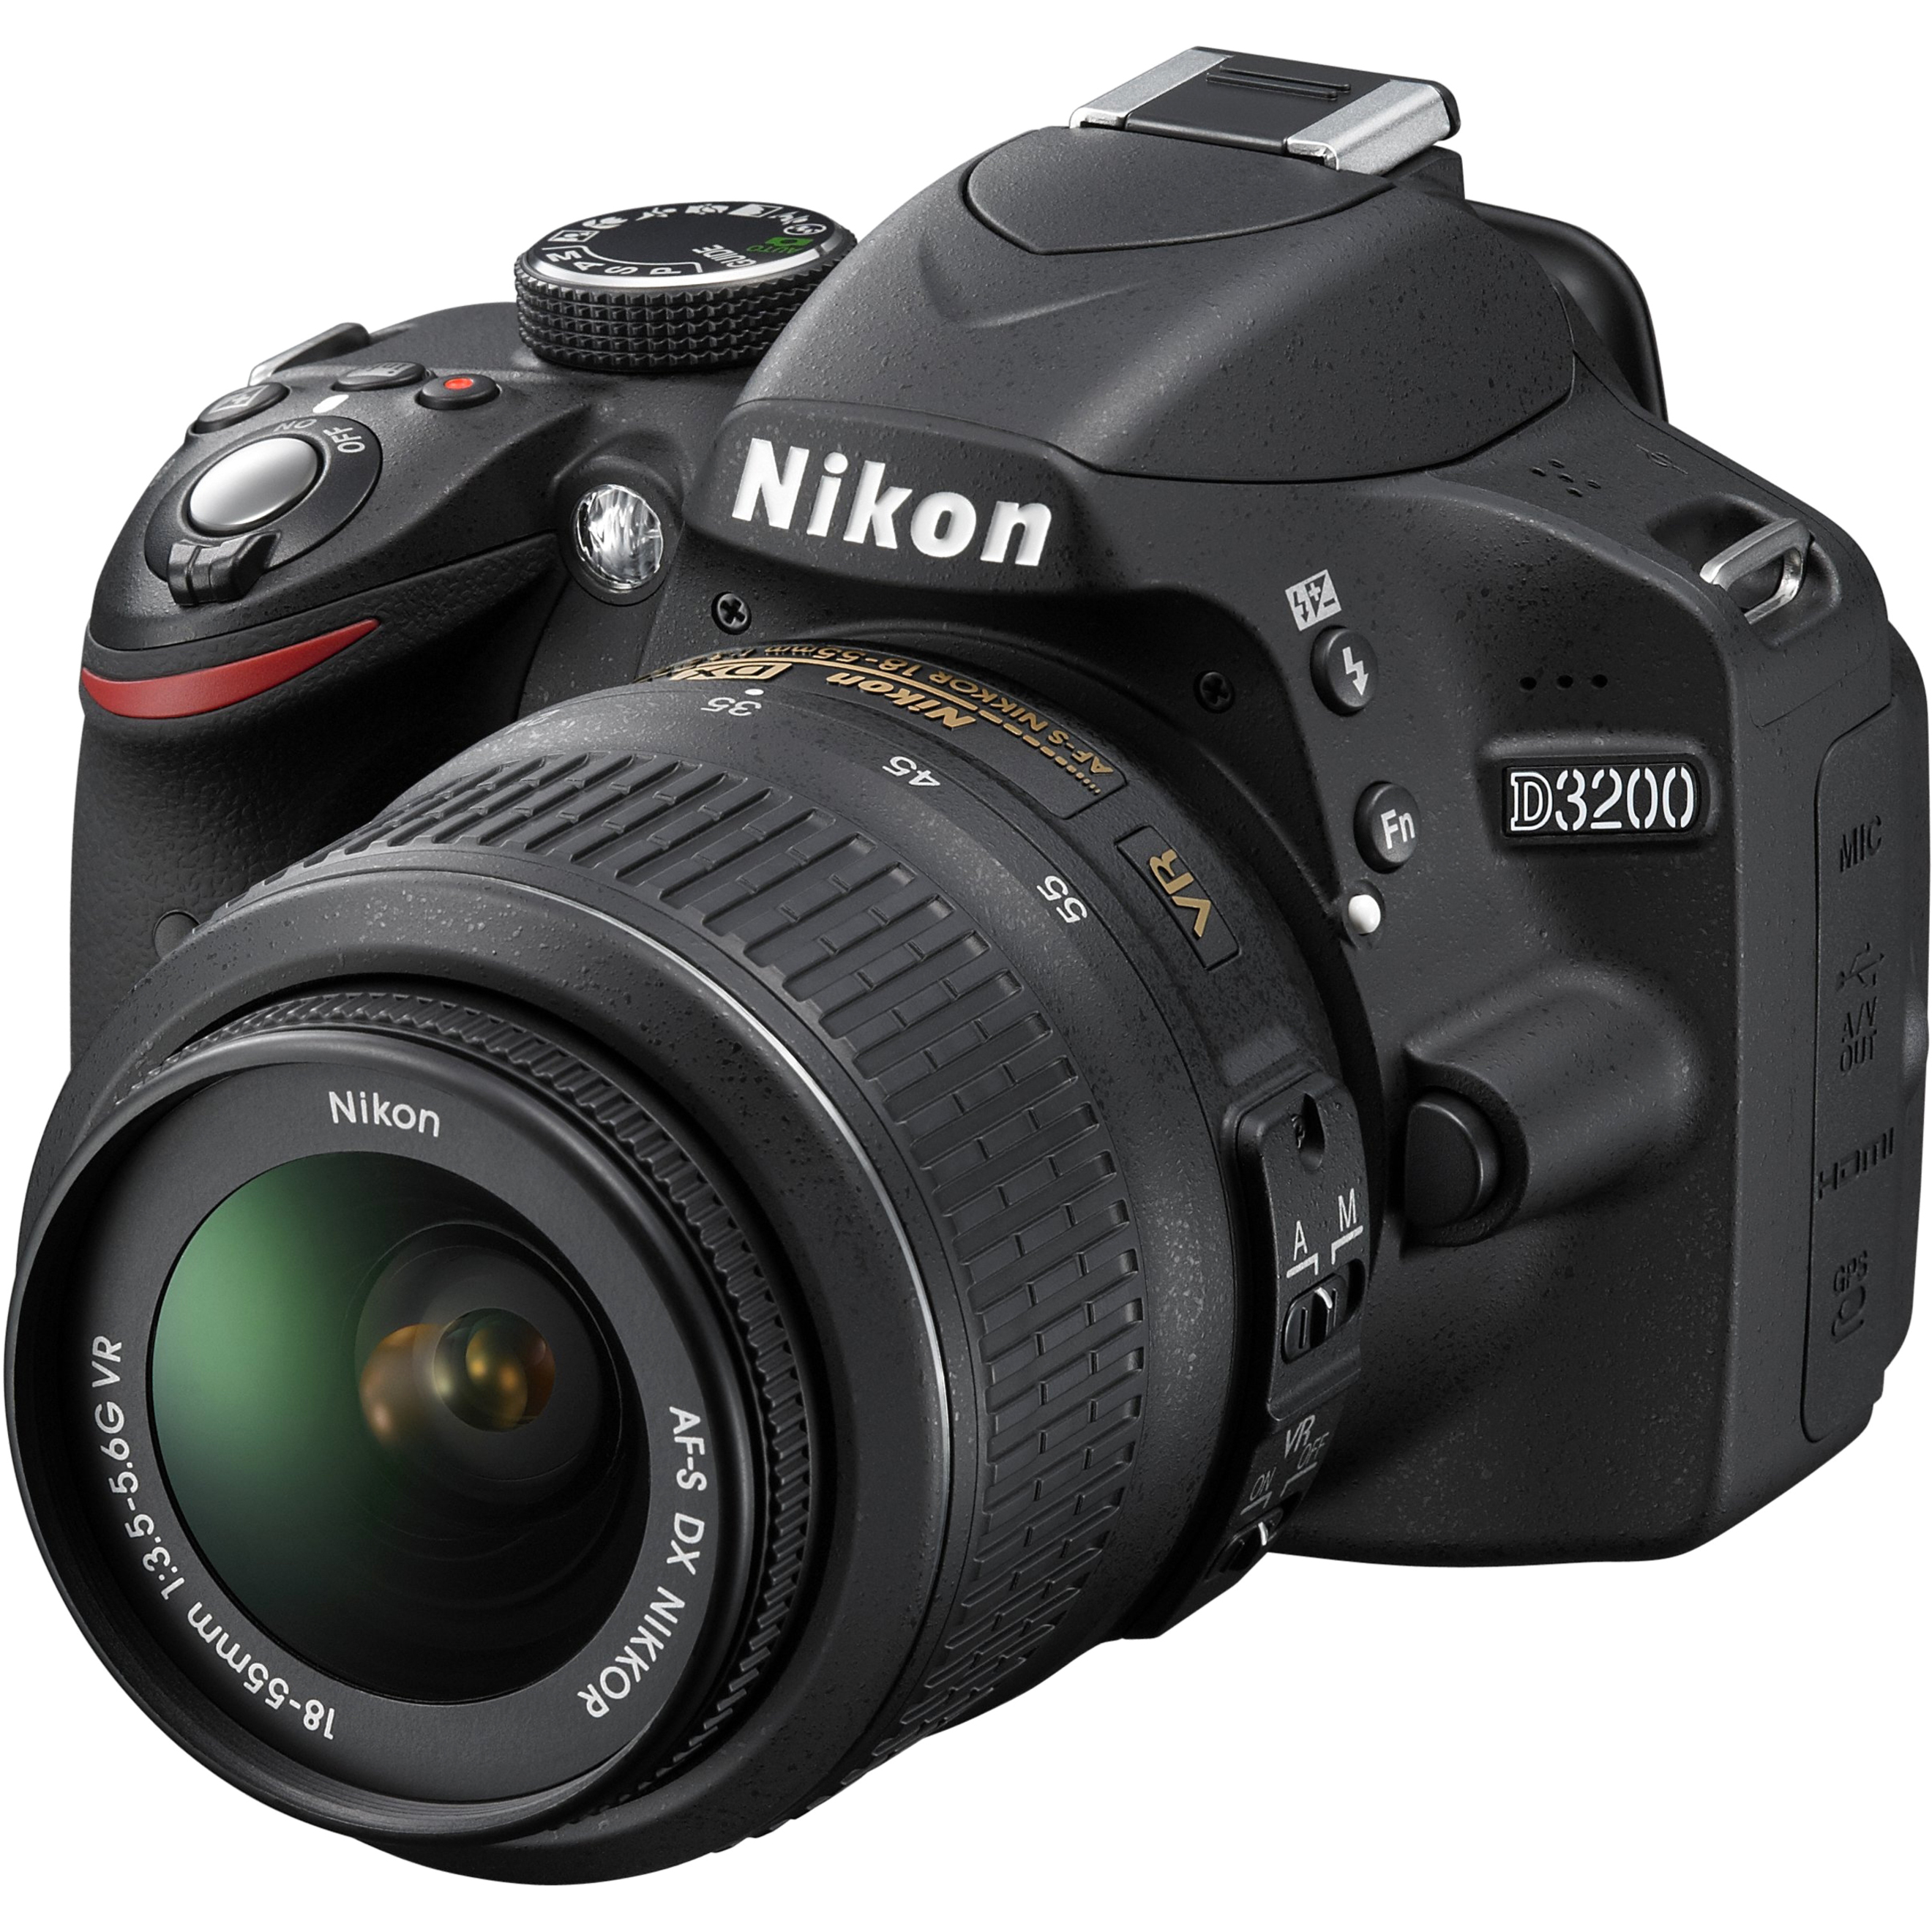 Nikon D3200 24.2 Megapixel Digital SLR Camera with Lens, 0.71", 2.17" (Lens 1), 2.17", 7.87" (Lens 2), Black - image 4 of 6